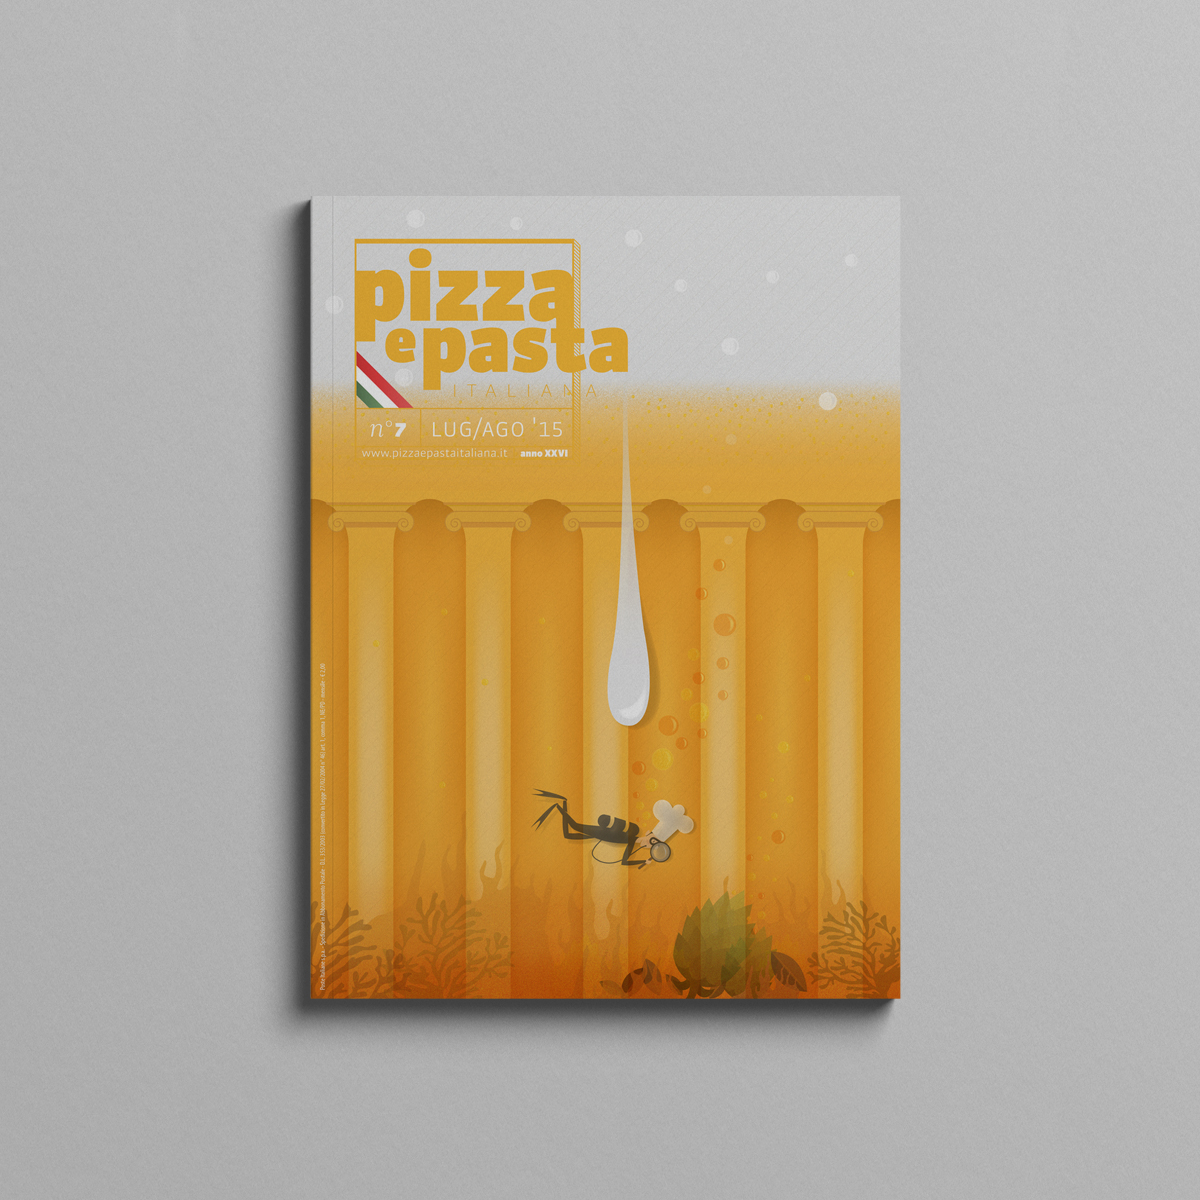 Pizza e pasta copertina birra